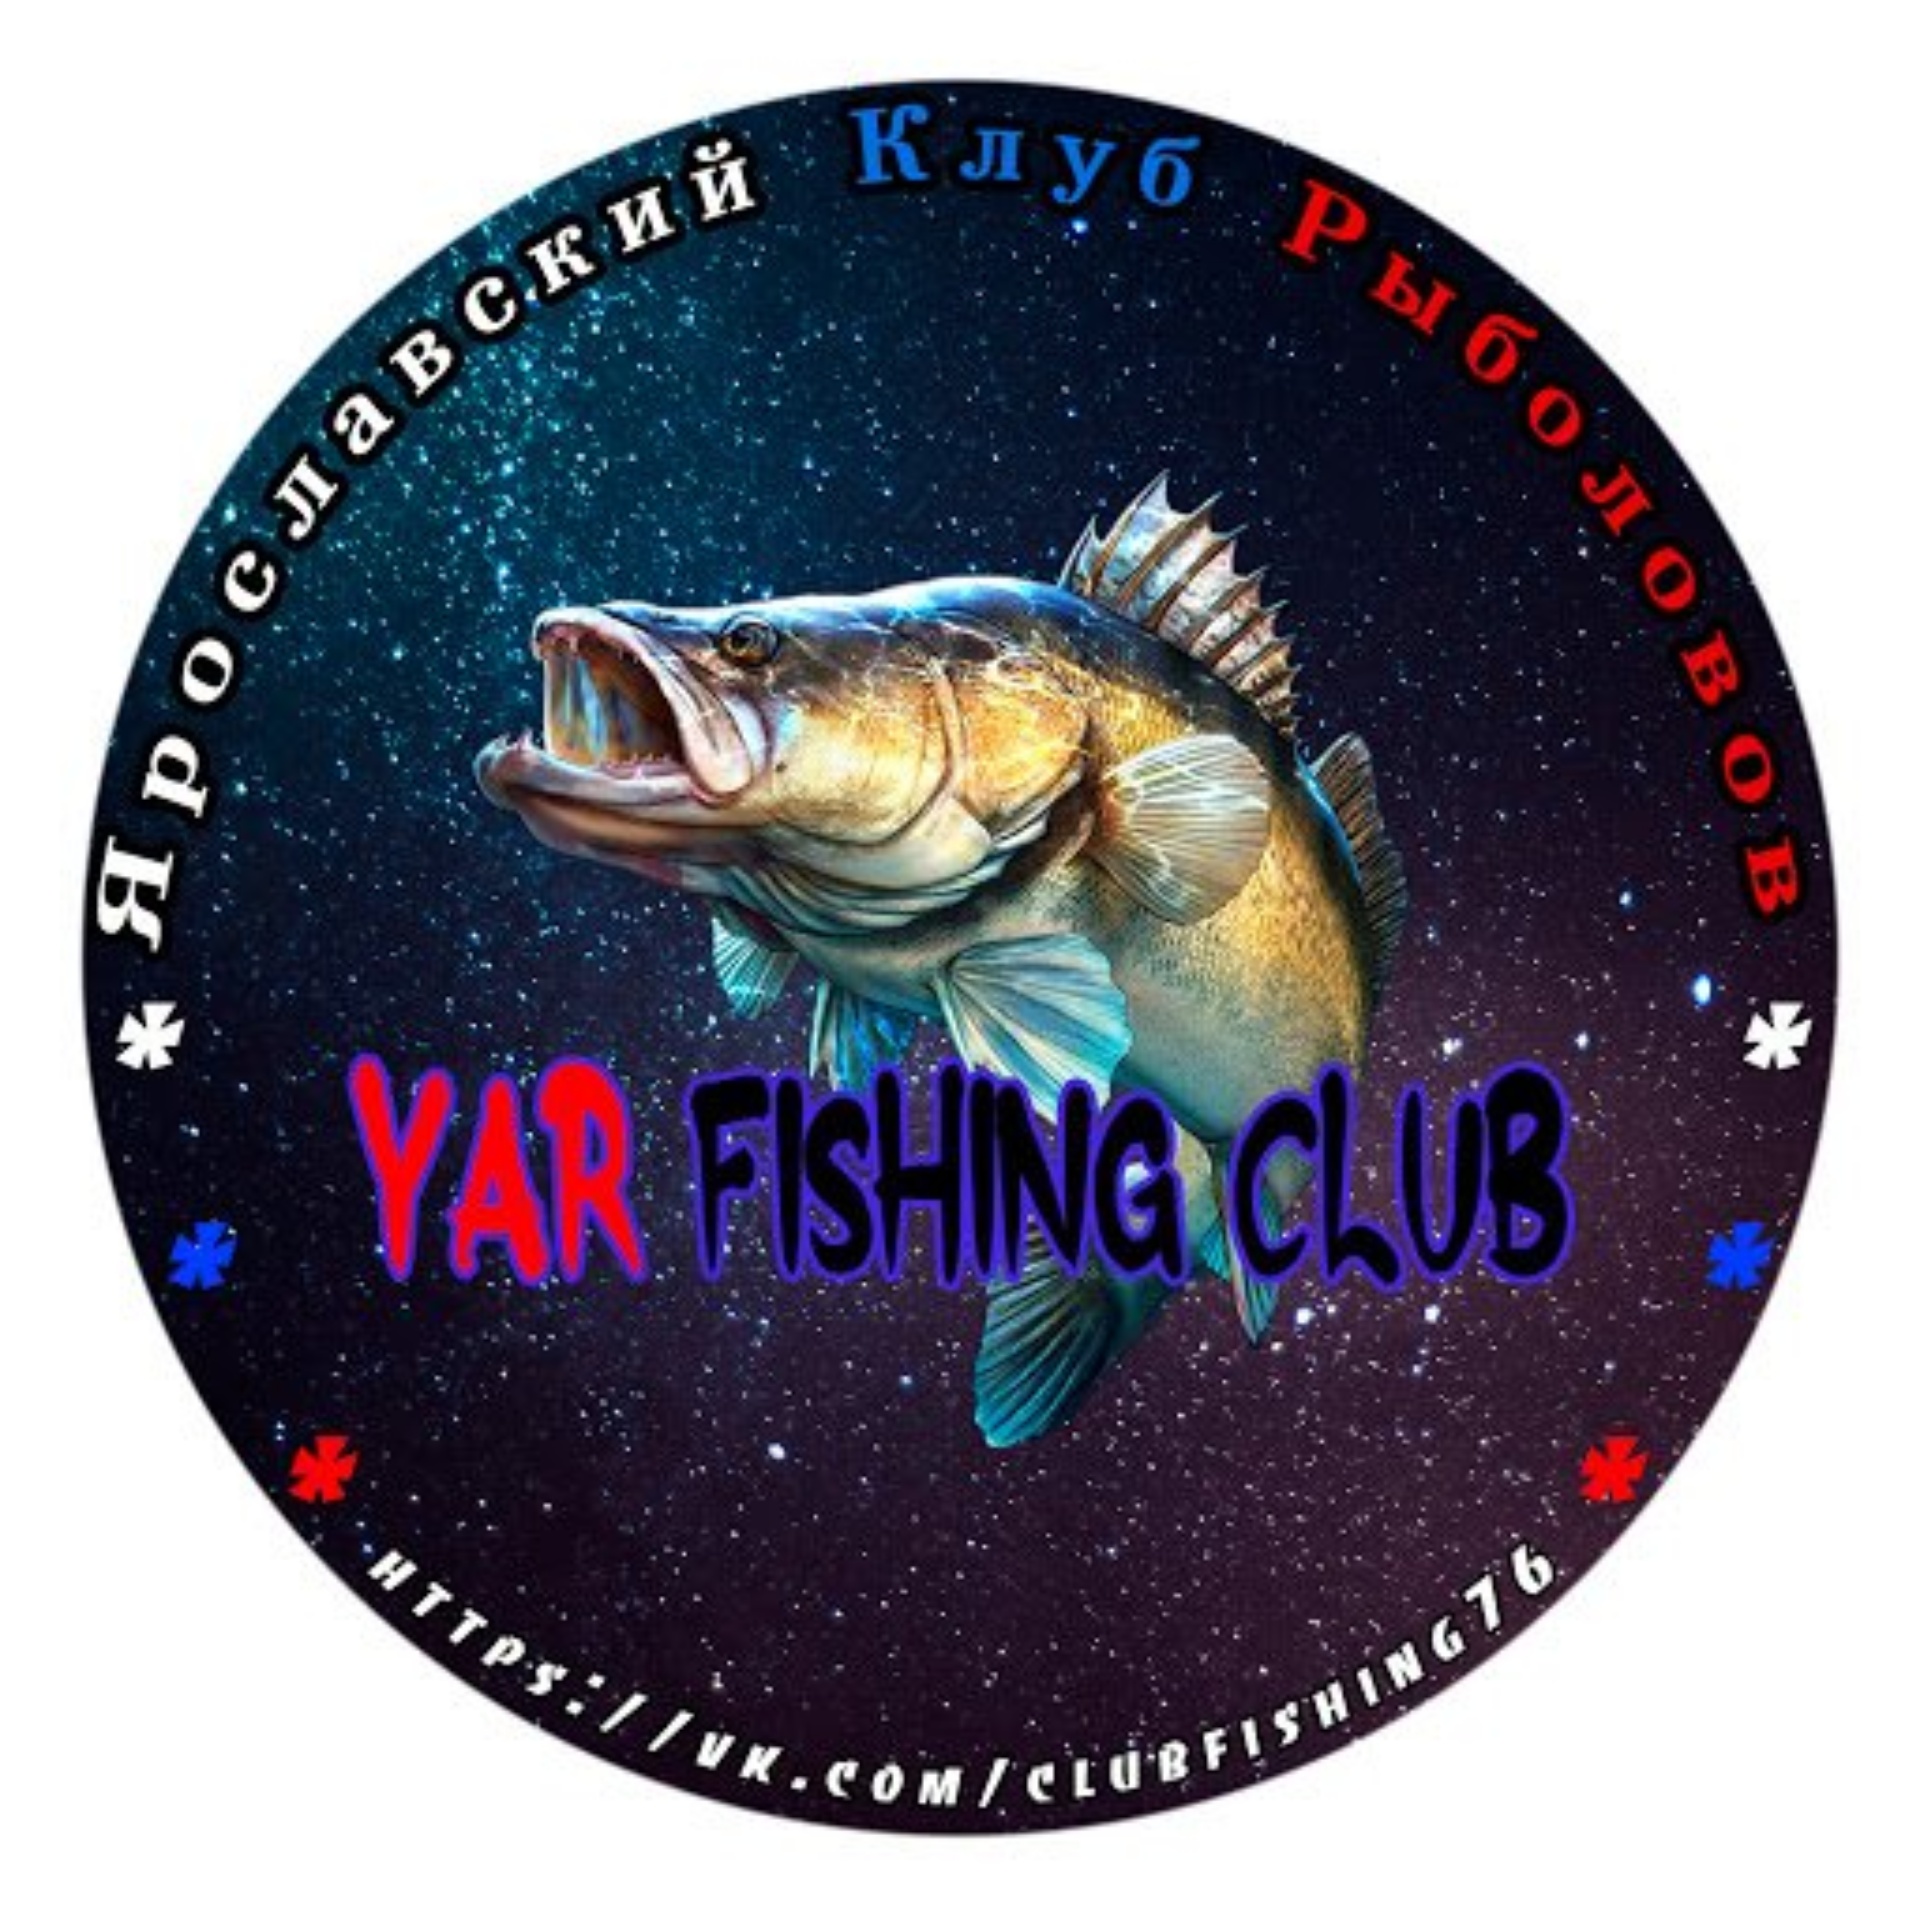 Ярославский клуб рыболовов ВКонтакте - информационная страница